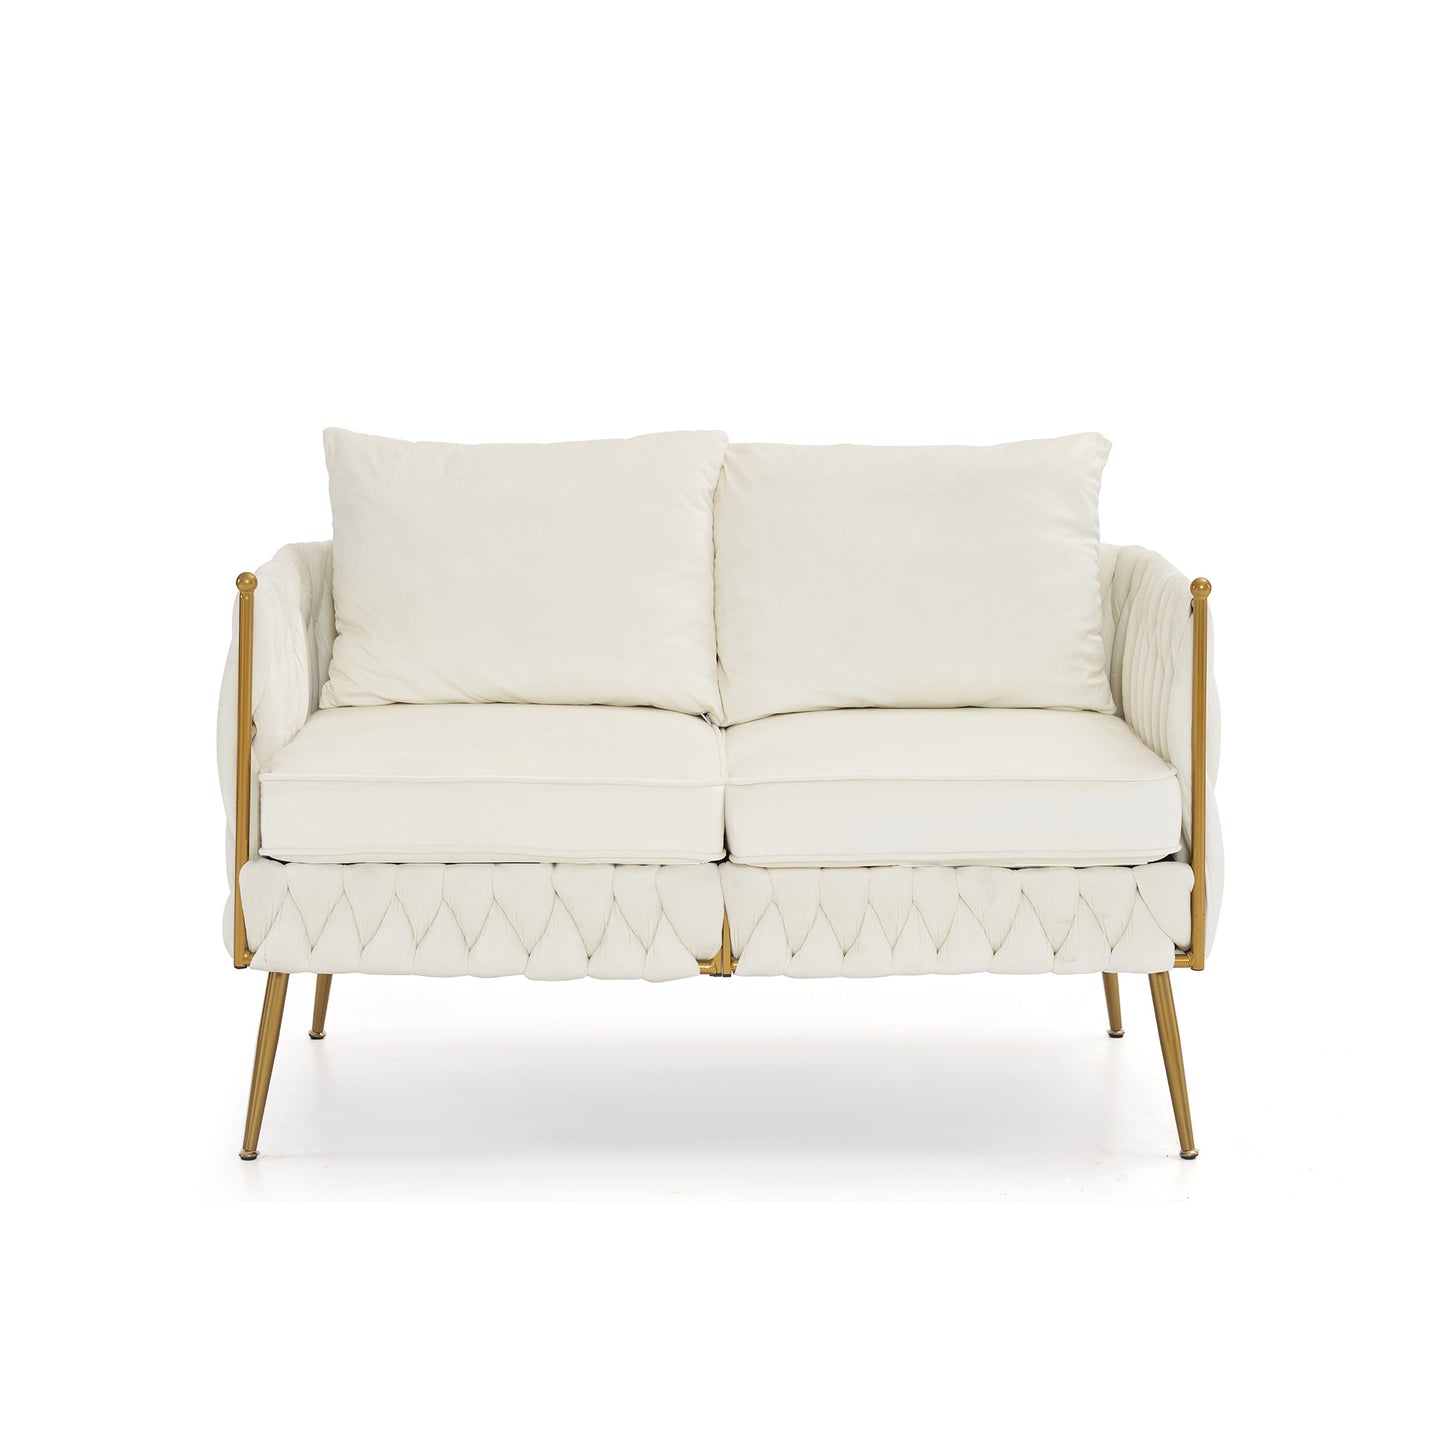 3 piece modern velvet upholstered set, cream white velvet